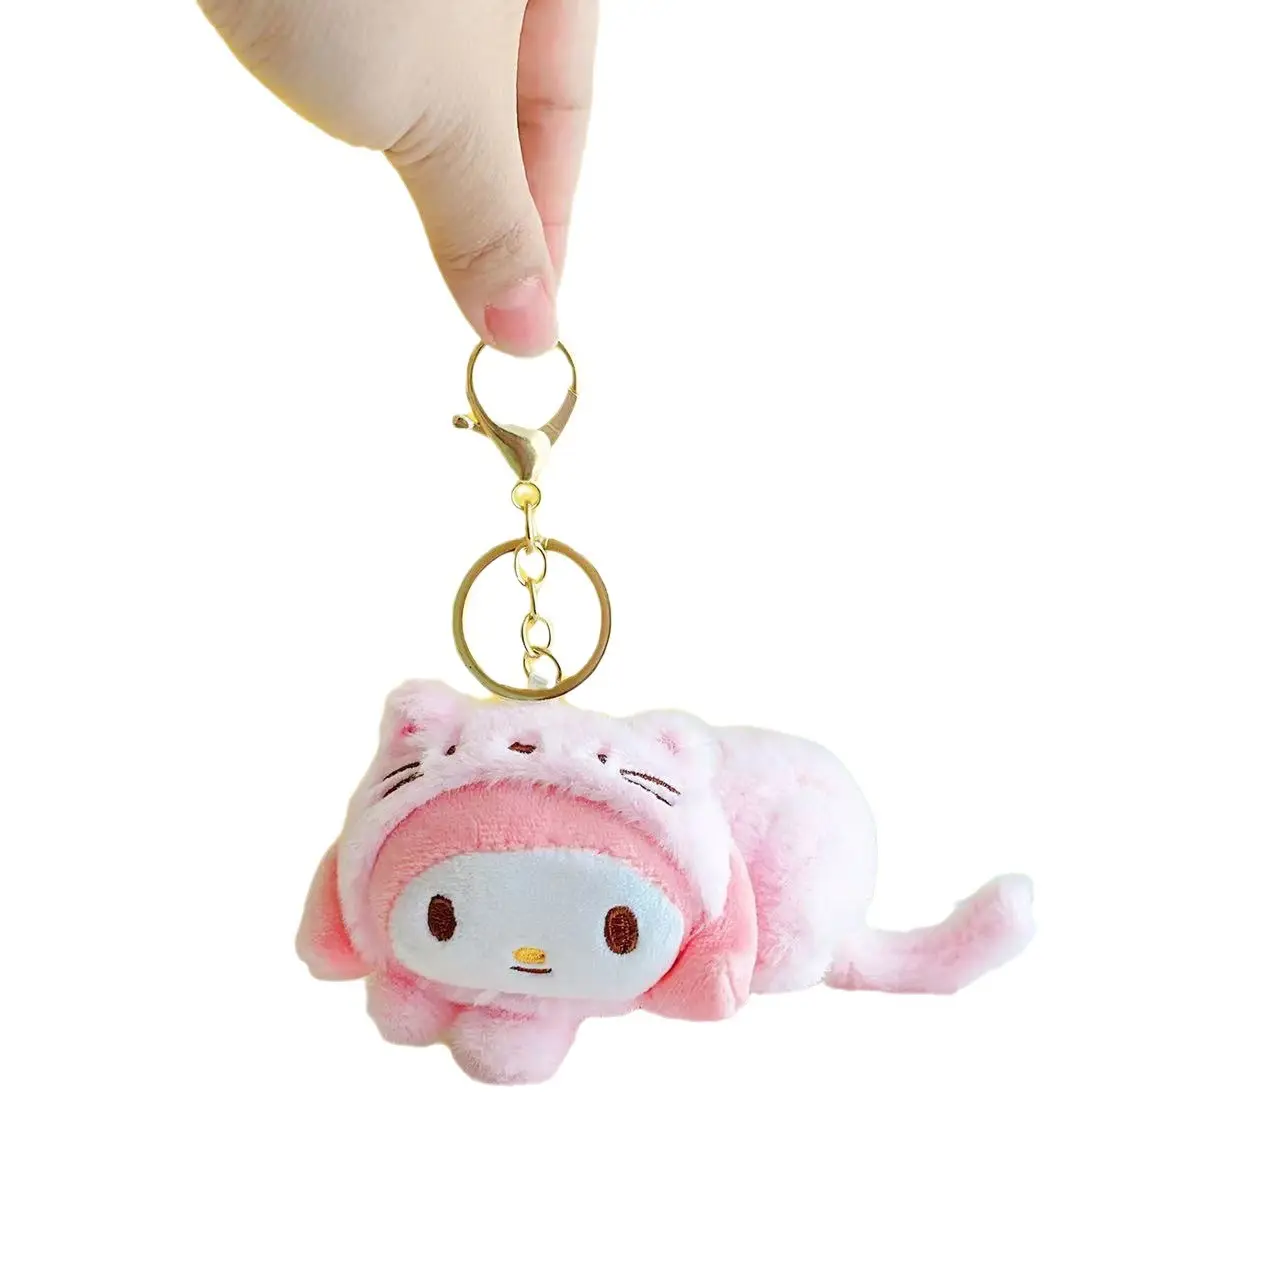 Transfrontalier élégant 10 cm peluche peluche Mini Kawaii mélodie Sanrio sac pendentif porte-clés pour filles cadeau